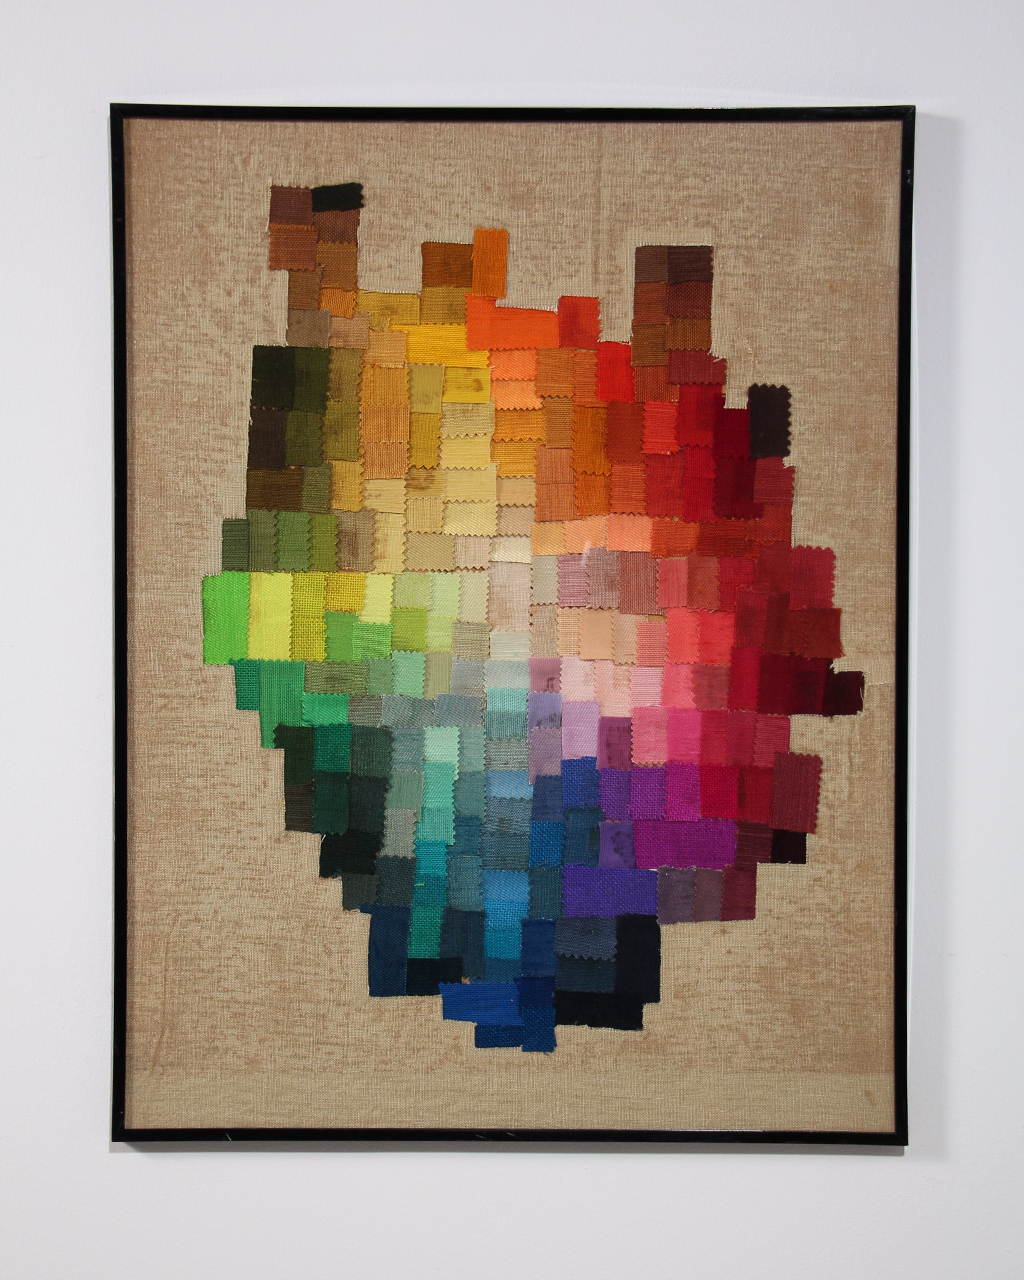 Tableau composé de coupons tissu découpe de plusieurs couleurs e,n dégradé forme abstraite